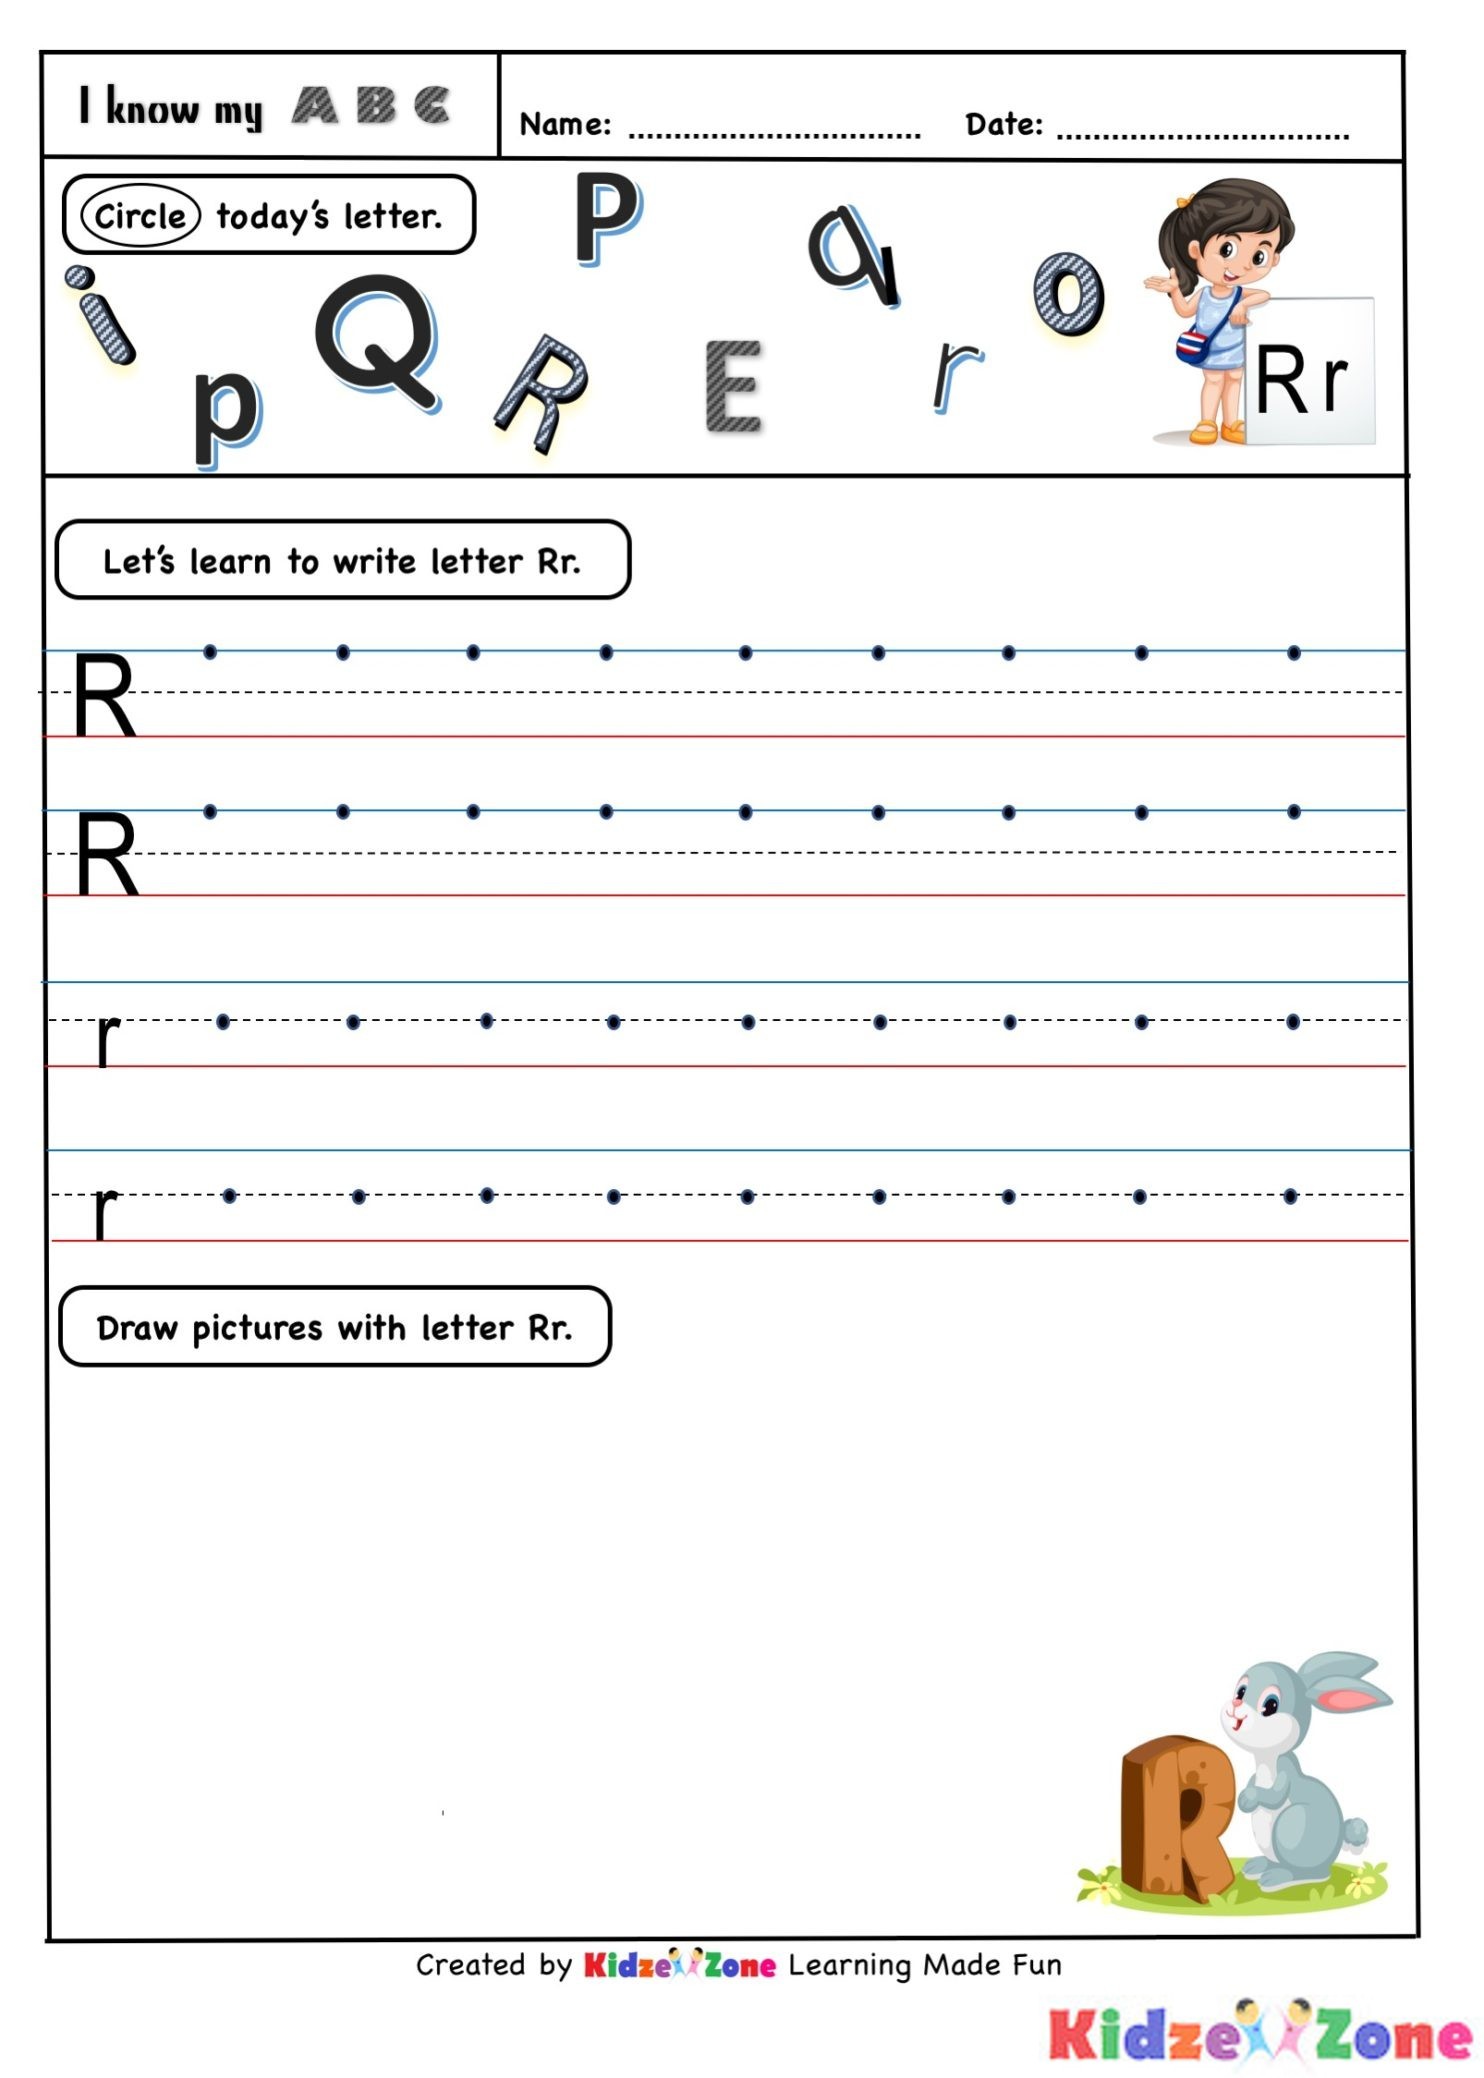 Kindergarten Letter Writing worksheets - Letter R | KidzeZone